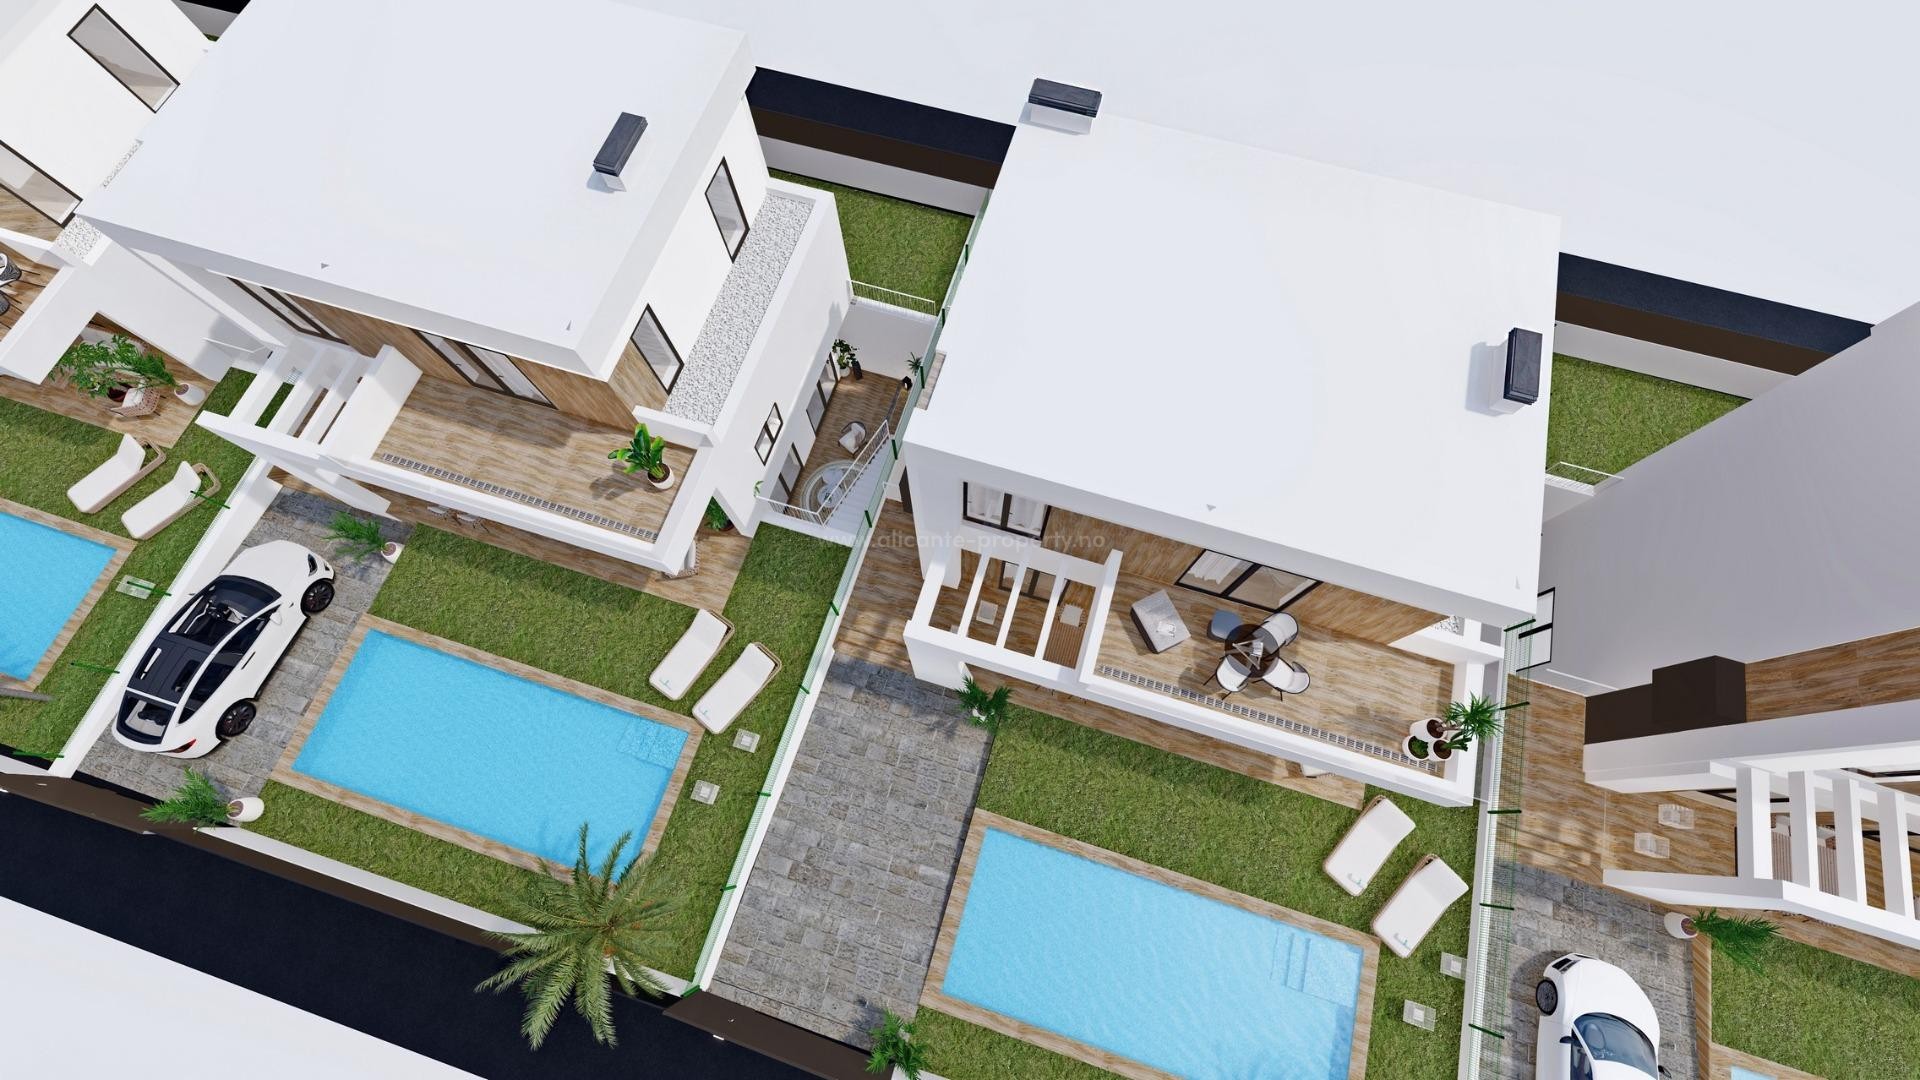 Nye moderne luksus-villaer i Finestrat, 3 soverom, 3 bad, privat hage med basseng og parkering, store terrasser, nære to golfbaner